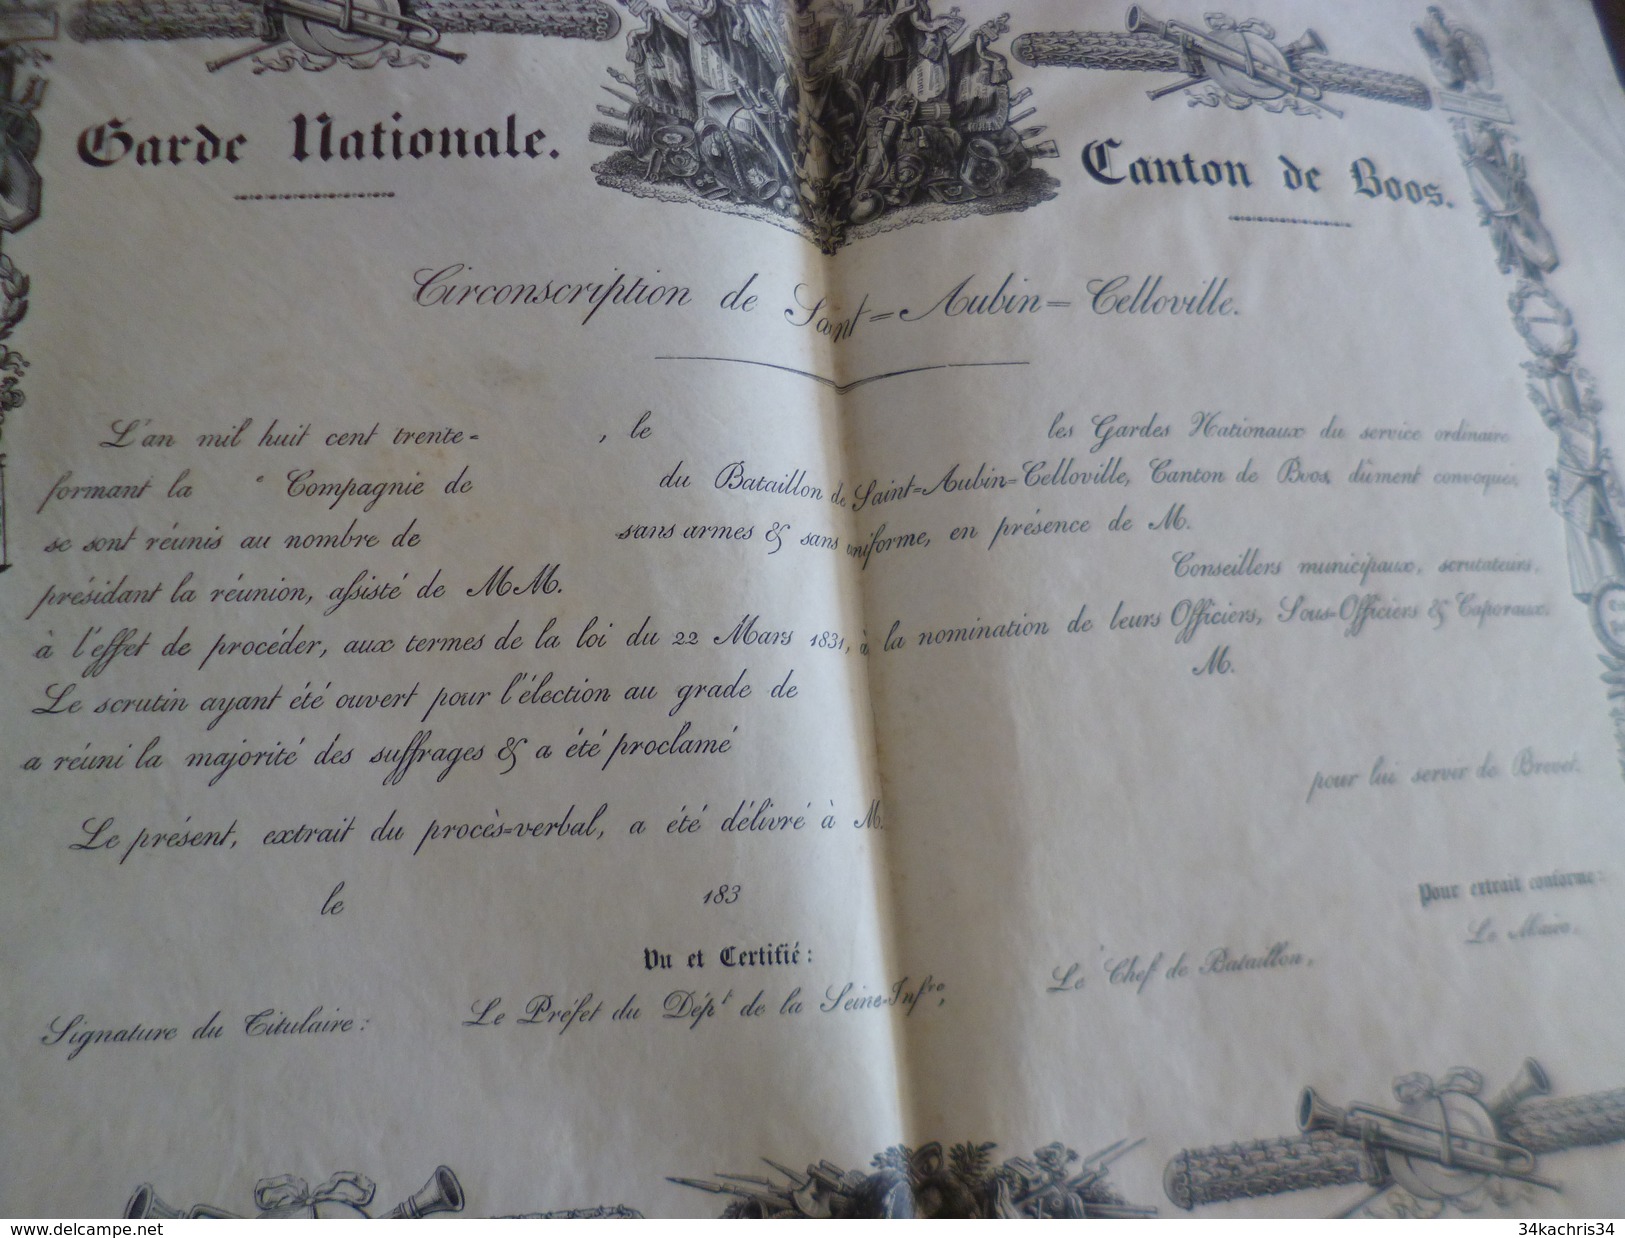 Sur Velin Rare Diplôme Vierge Illustré Garde Nationale Canton De Boos Vers 1830 France Seine Maritime  41,7 X 28.9 TBE - Diplômes & Bulletins Scolaires